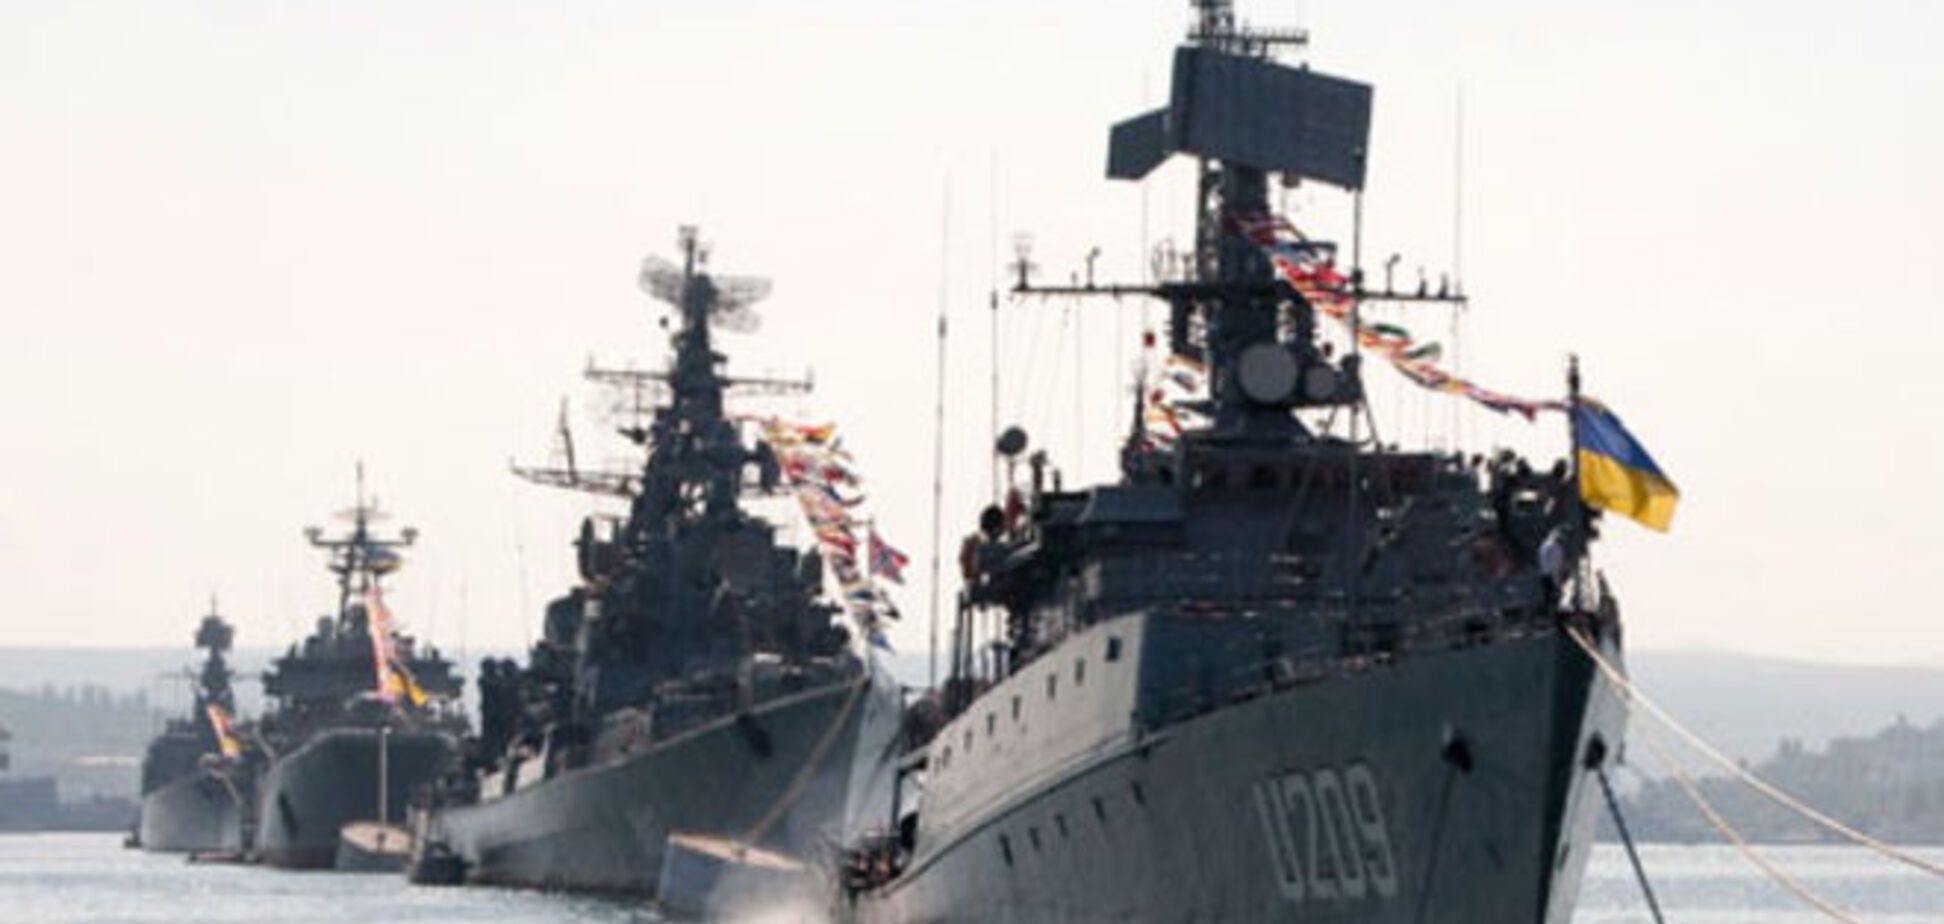 Теперь не последнее, а первое: моряки ВМС Украины отметили новый праздник